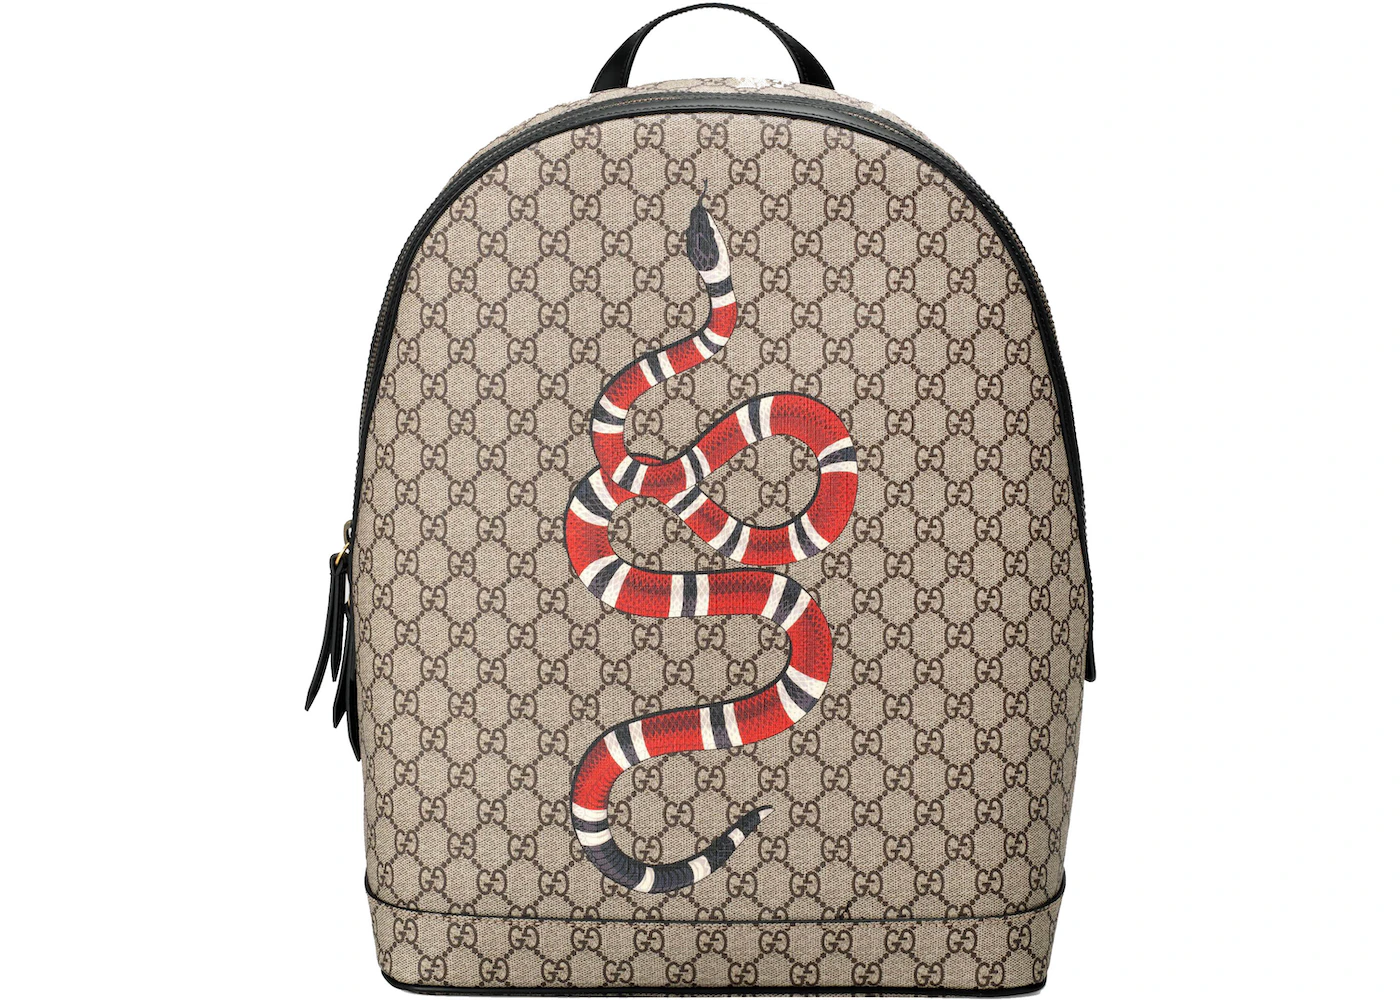 Gucci Backpack GG Supreme Kingsnake Print Beige/Ebony in Canvas